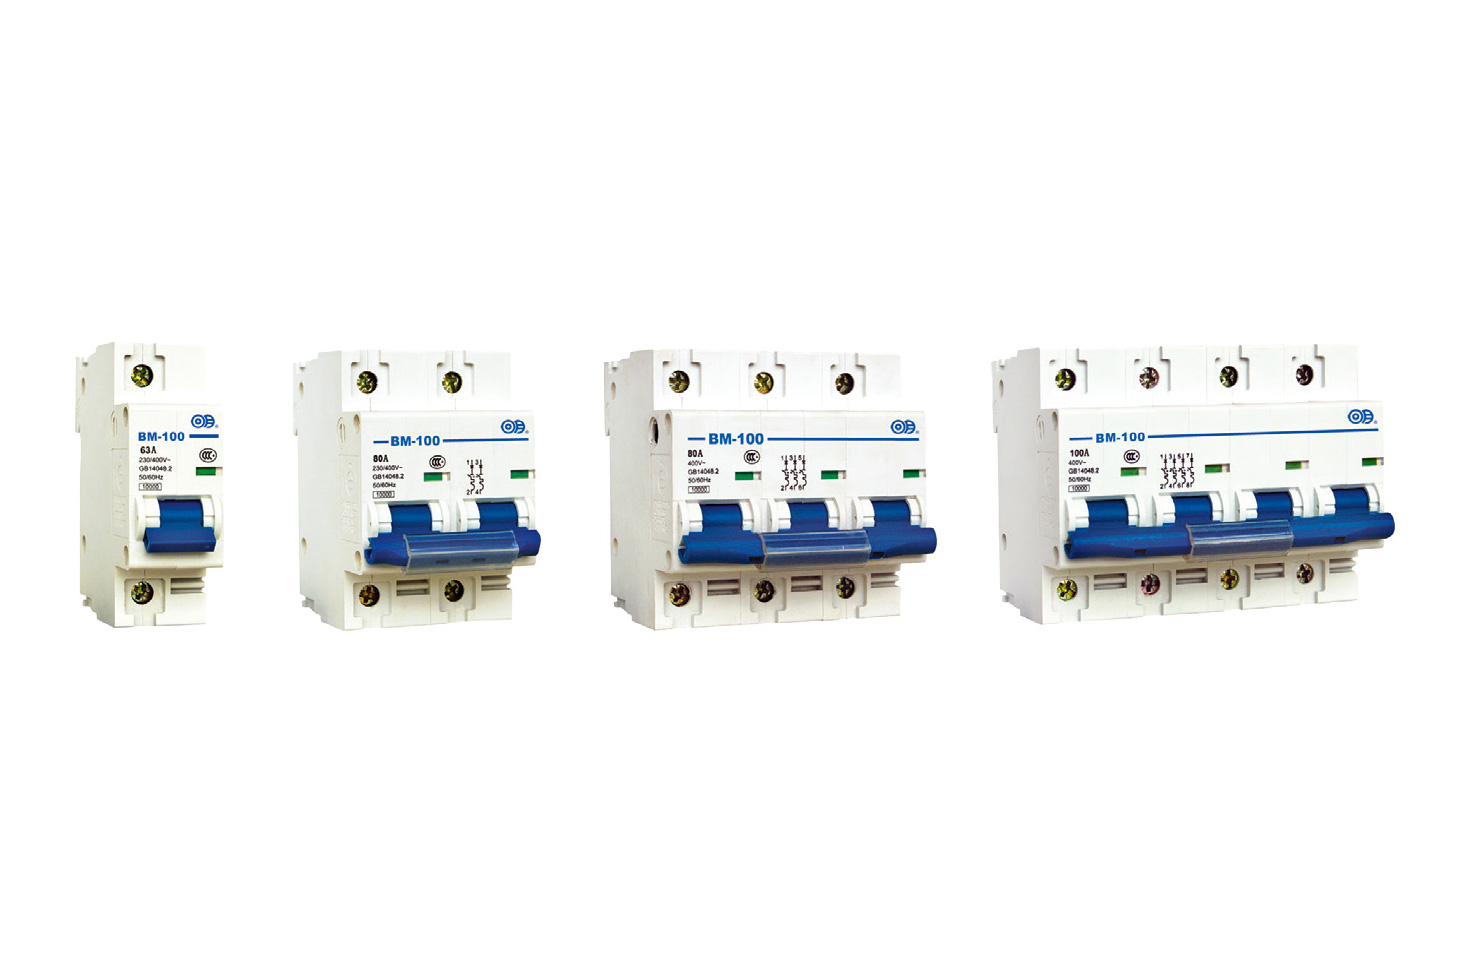 BM-100 series miniature circuit breakers